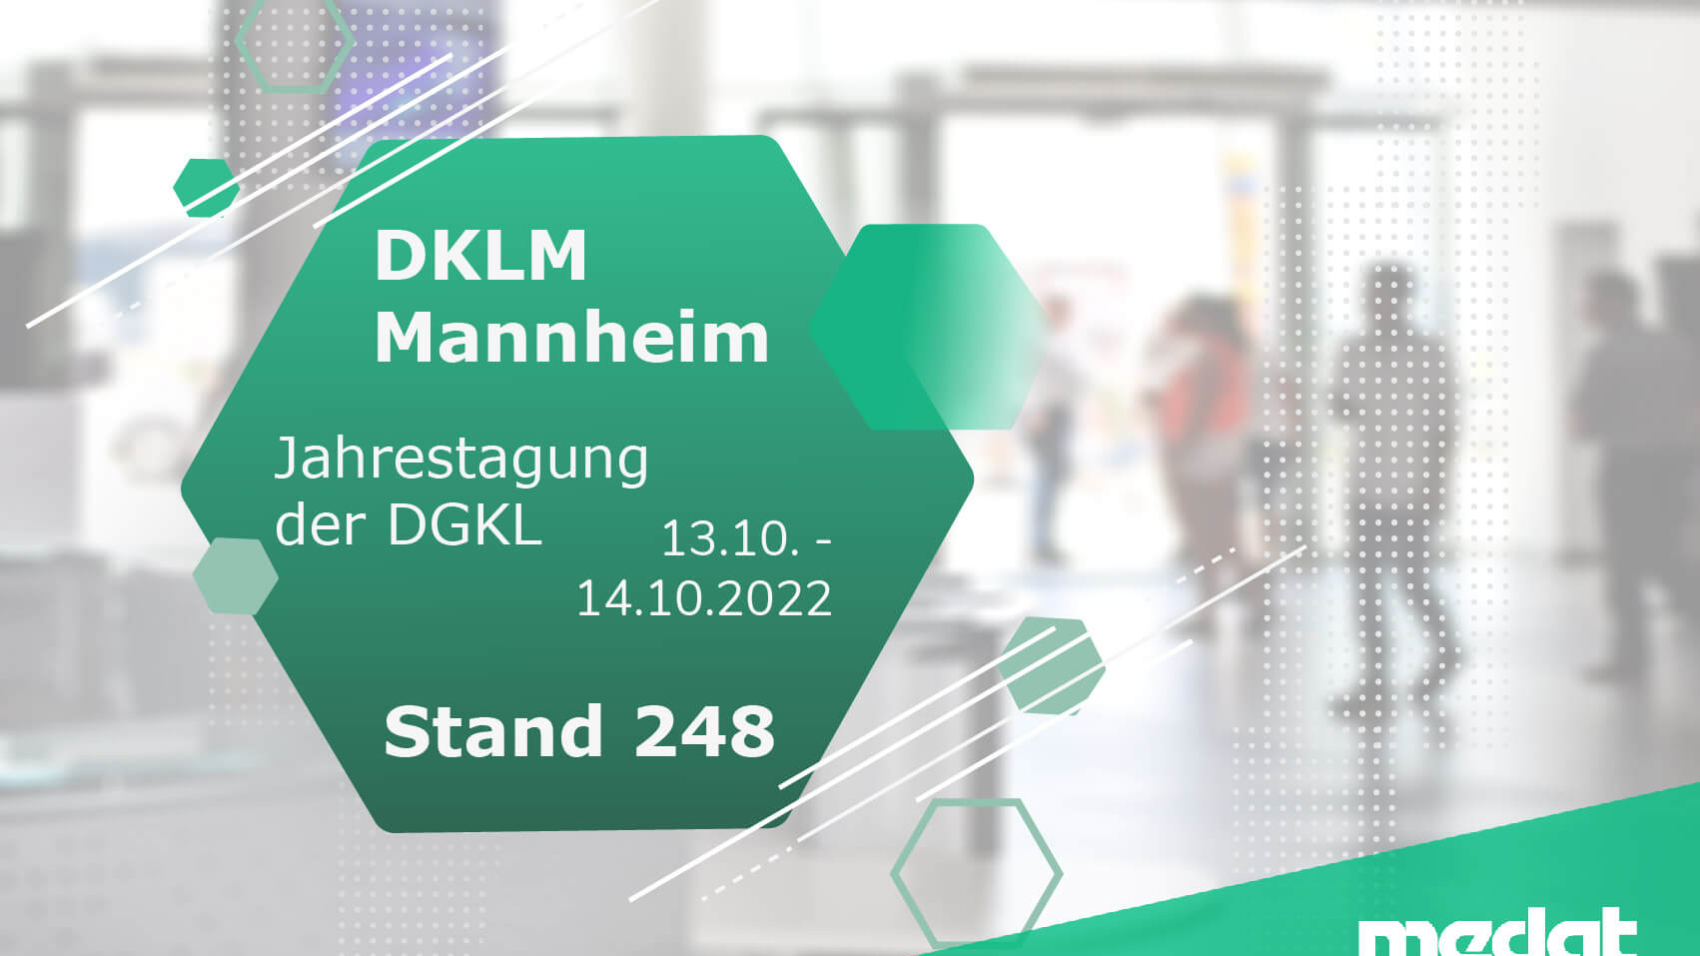 Grafik für den Blogbeitrag über die DKLM in Mannheim mit weiß/grünen Elementen und den Medat Logo in der rechten unteren Ecke. Im Hintergrund ist ein Bild einer medizinischen Einrichtung zu sehen.